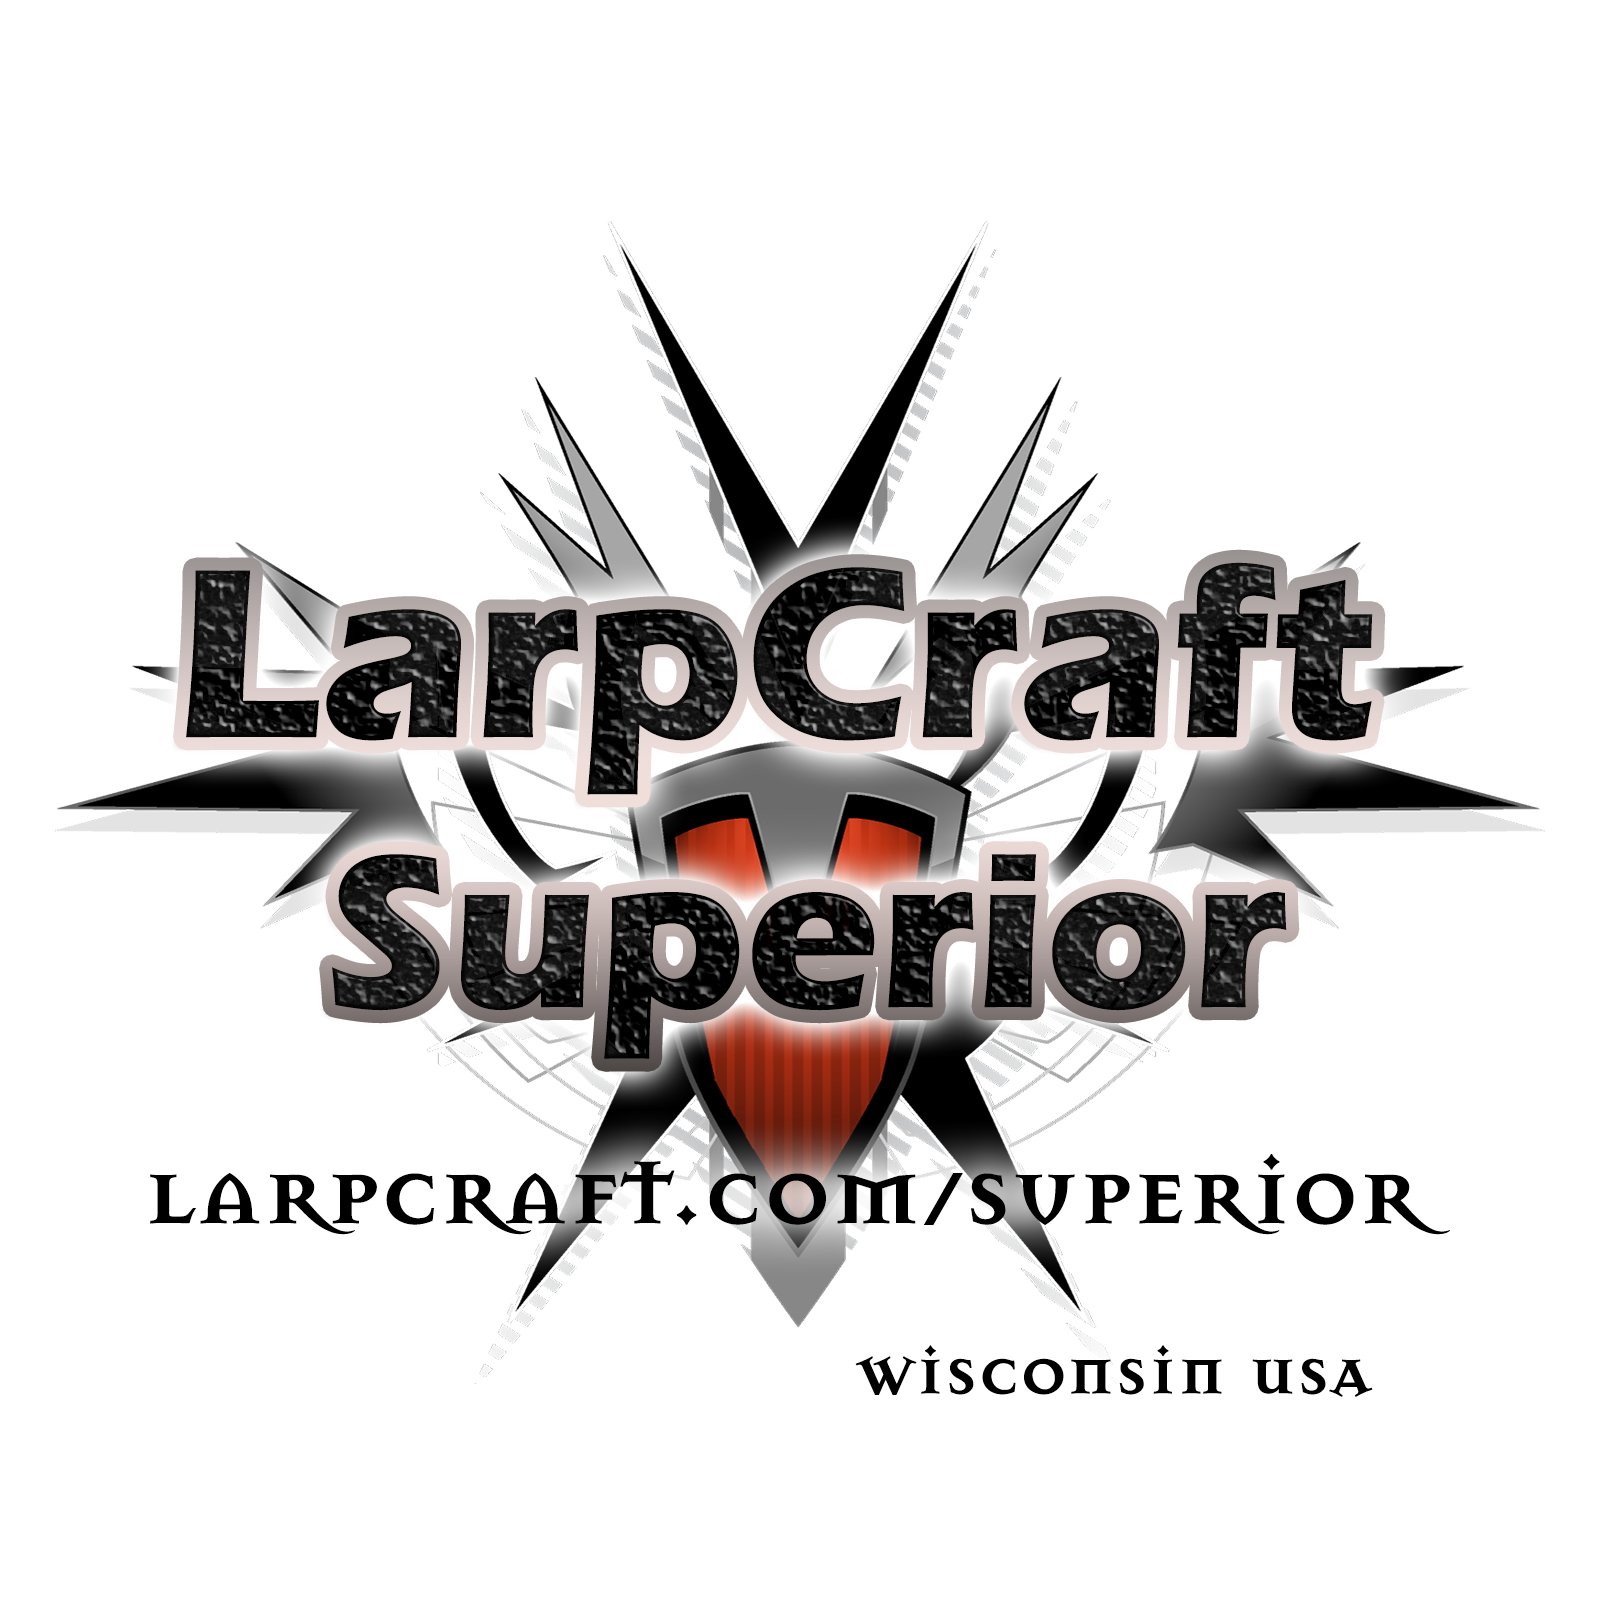 LarpCraft of Superior, WI